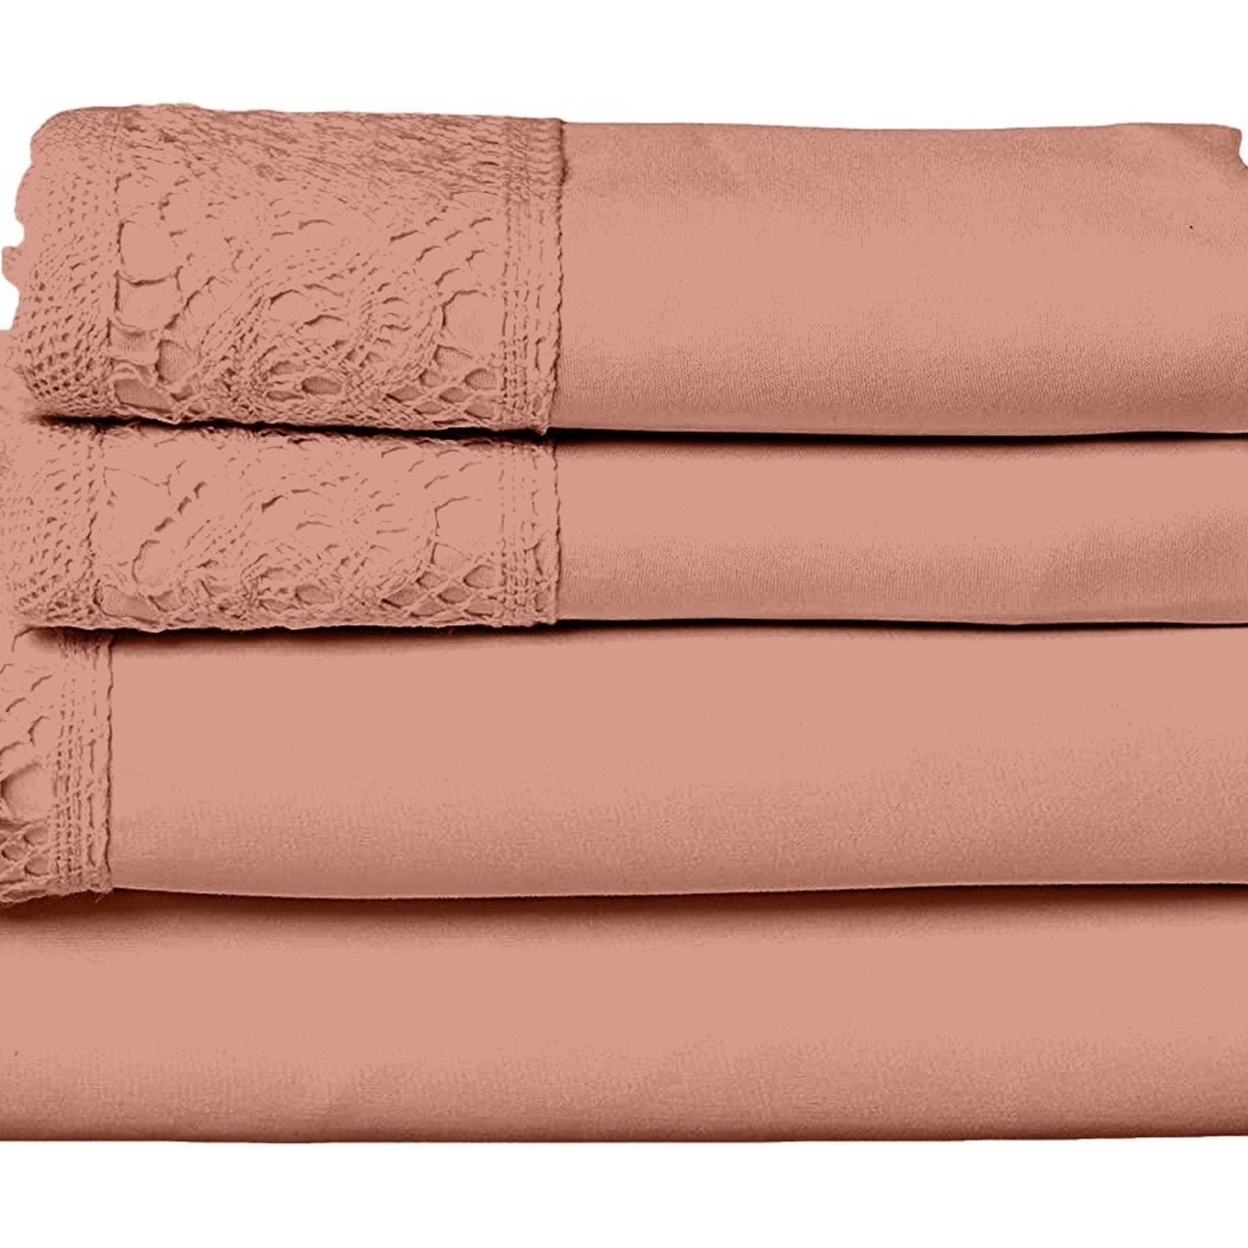 Edra 4 Piece Microfiber Full Size Bed Sheet Set, Crochet Lace, Dusty Pink- Saltoro Sherpi